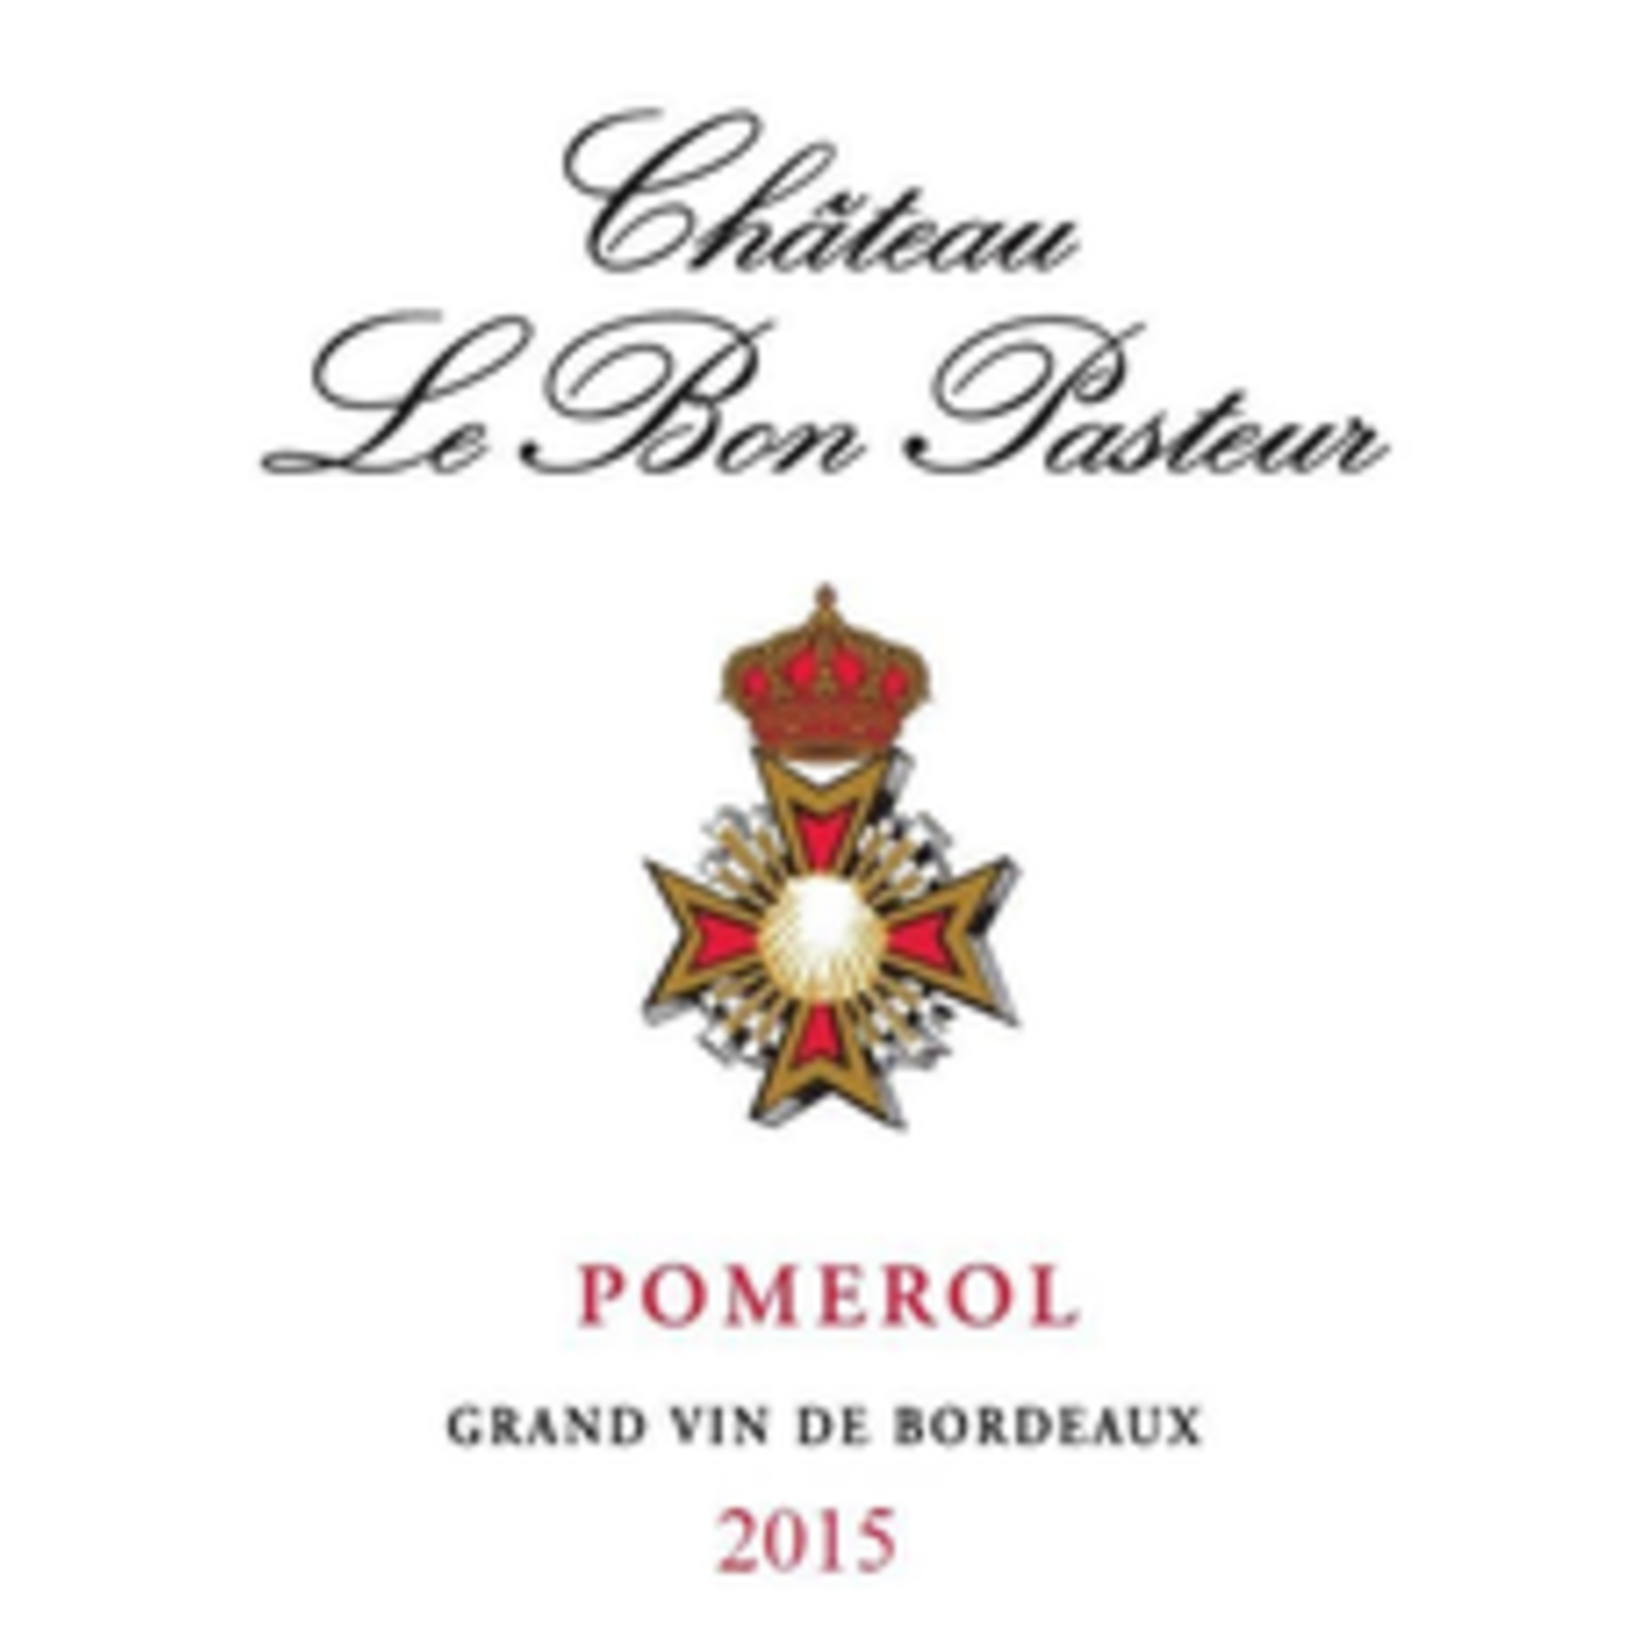 Wine Chateau Le Bon Pasteur 2018